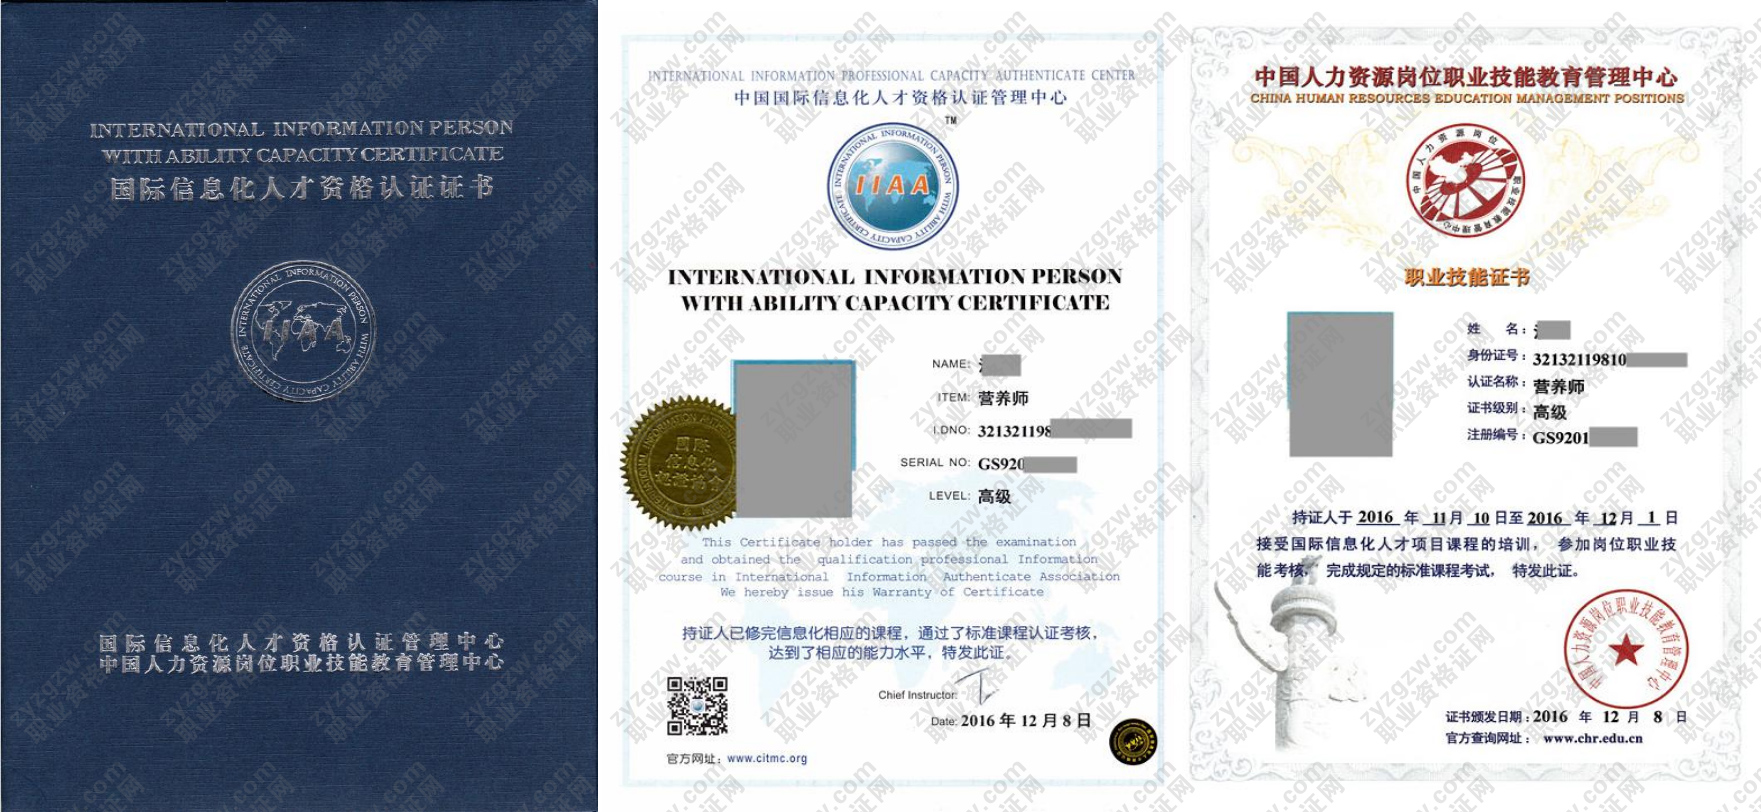 中国人力资源岗位职业技能教育管理中心 电工技师 国际信息化人才资格认证证书